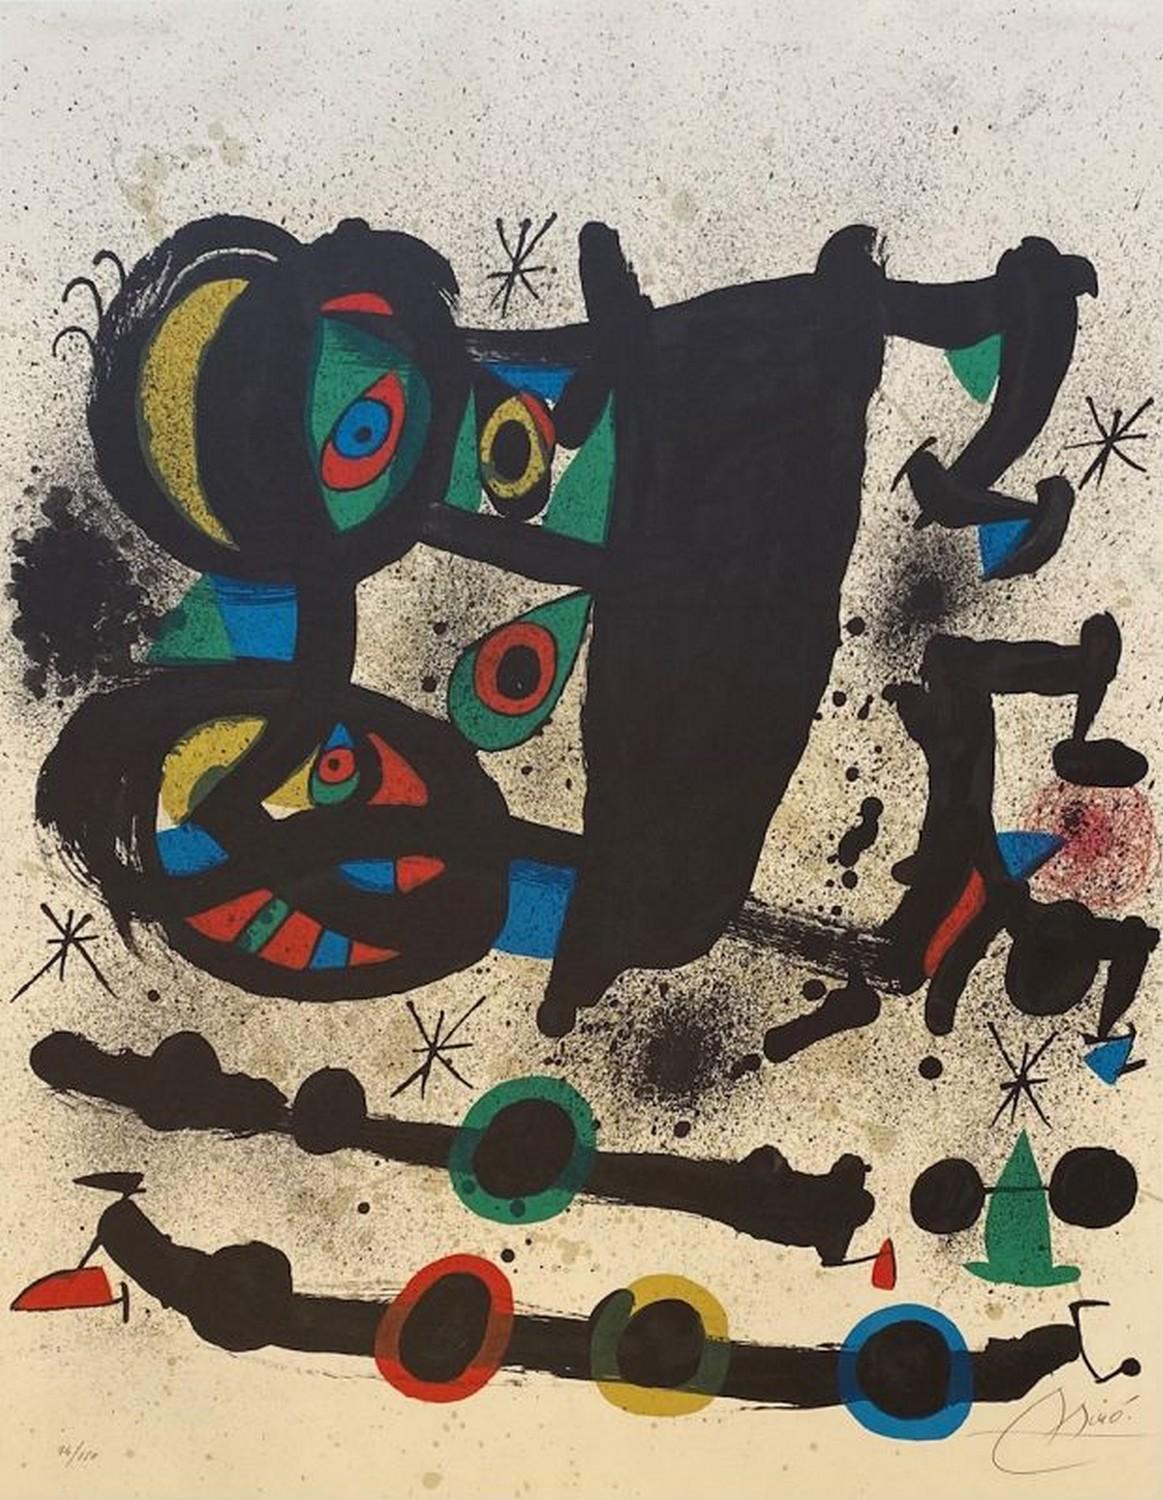 Joan Miró Abstract Print - Exposicion Homenaje a Josep Lluis Sert 